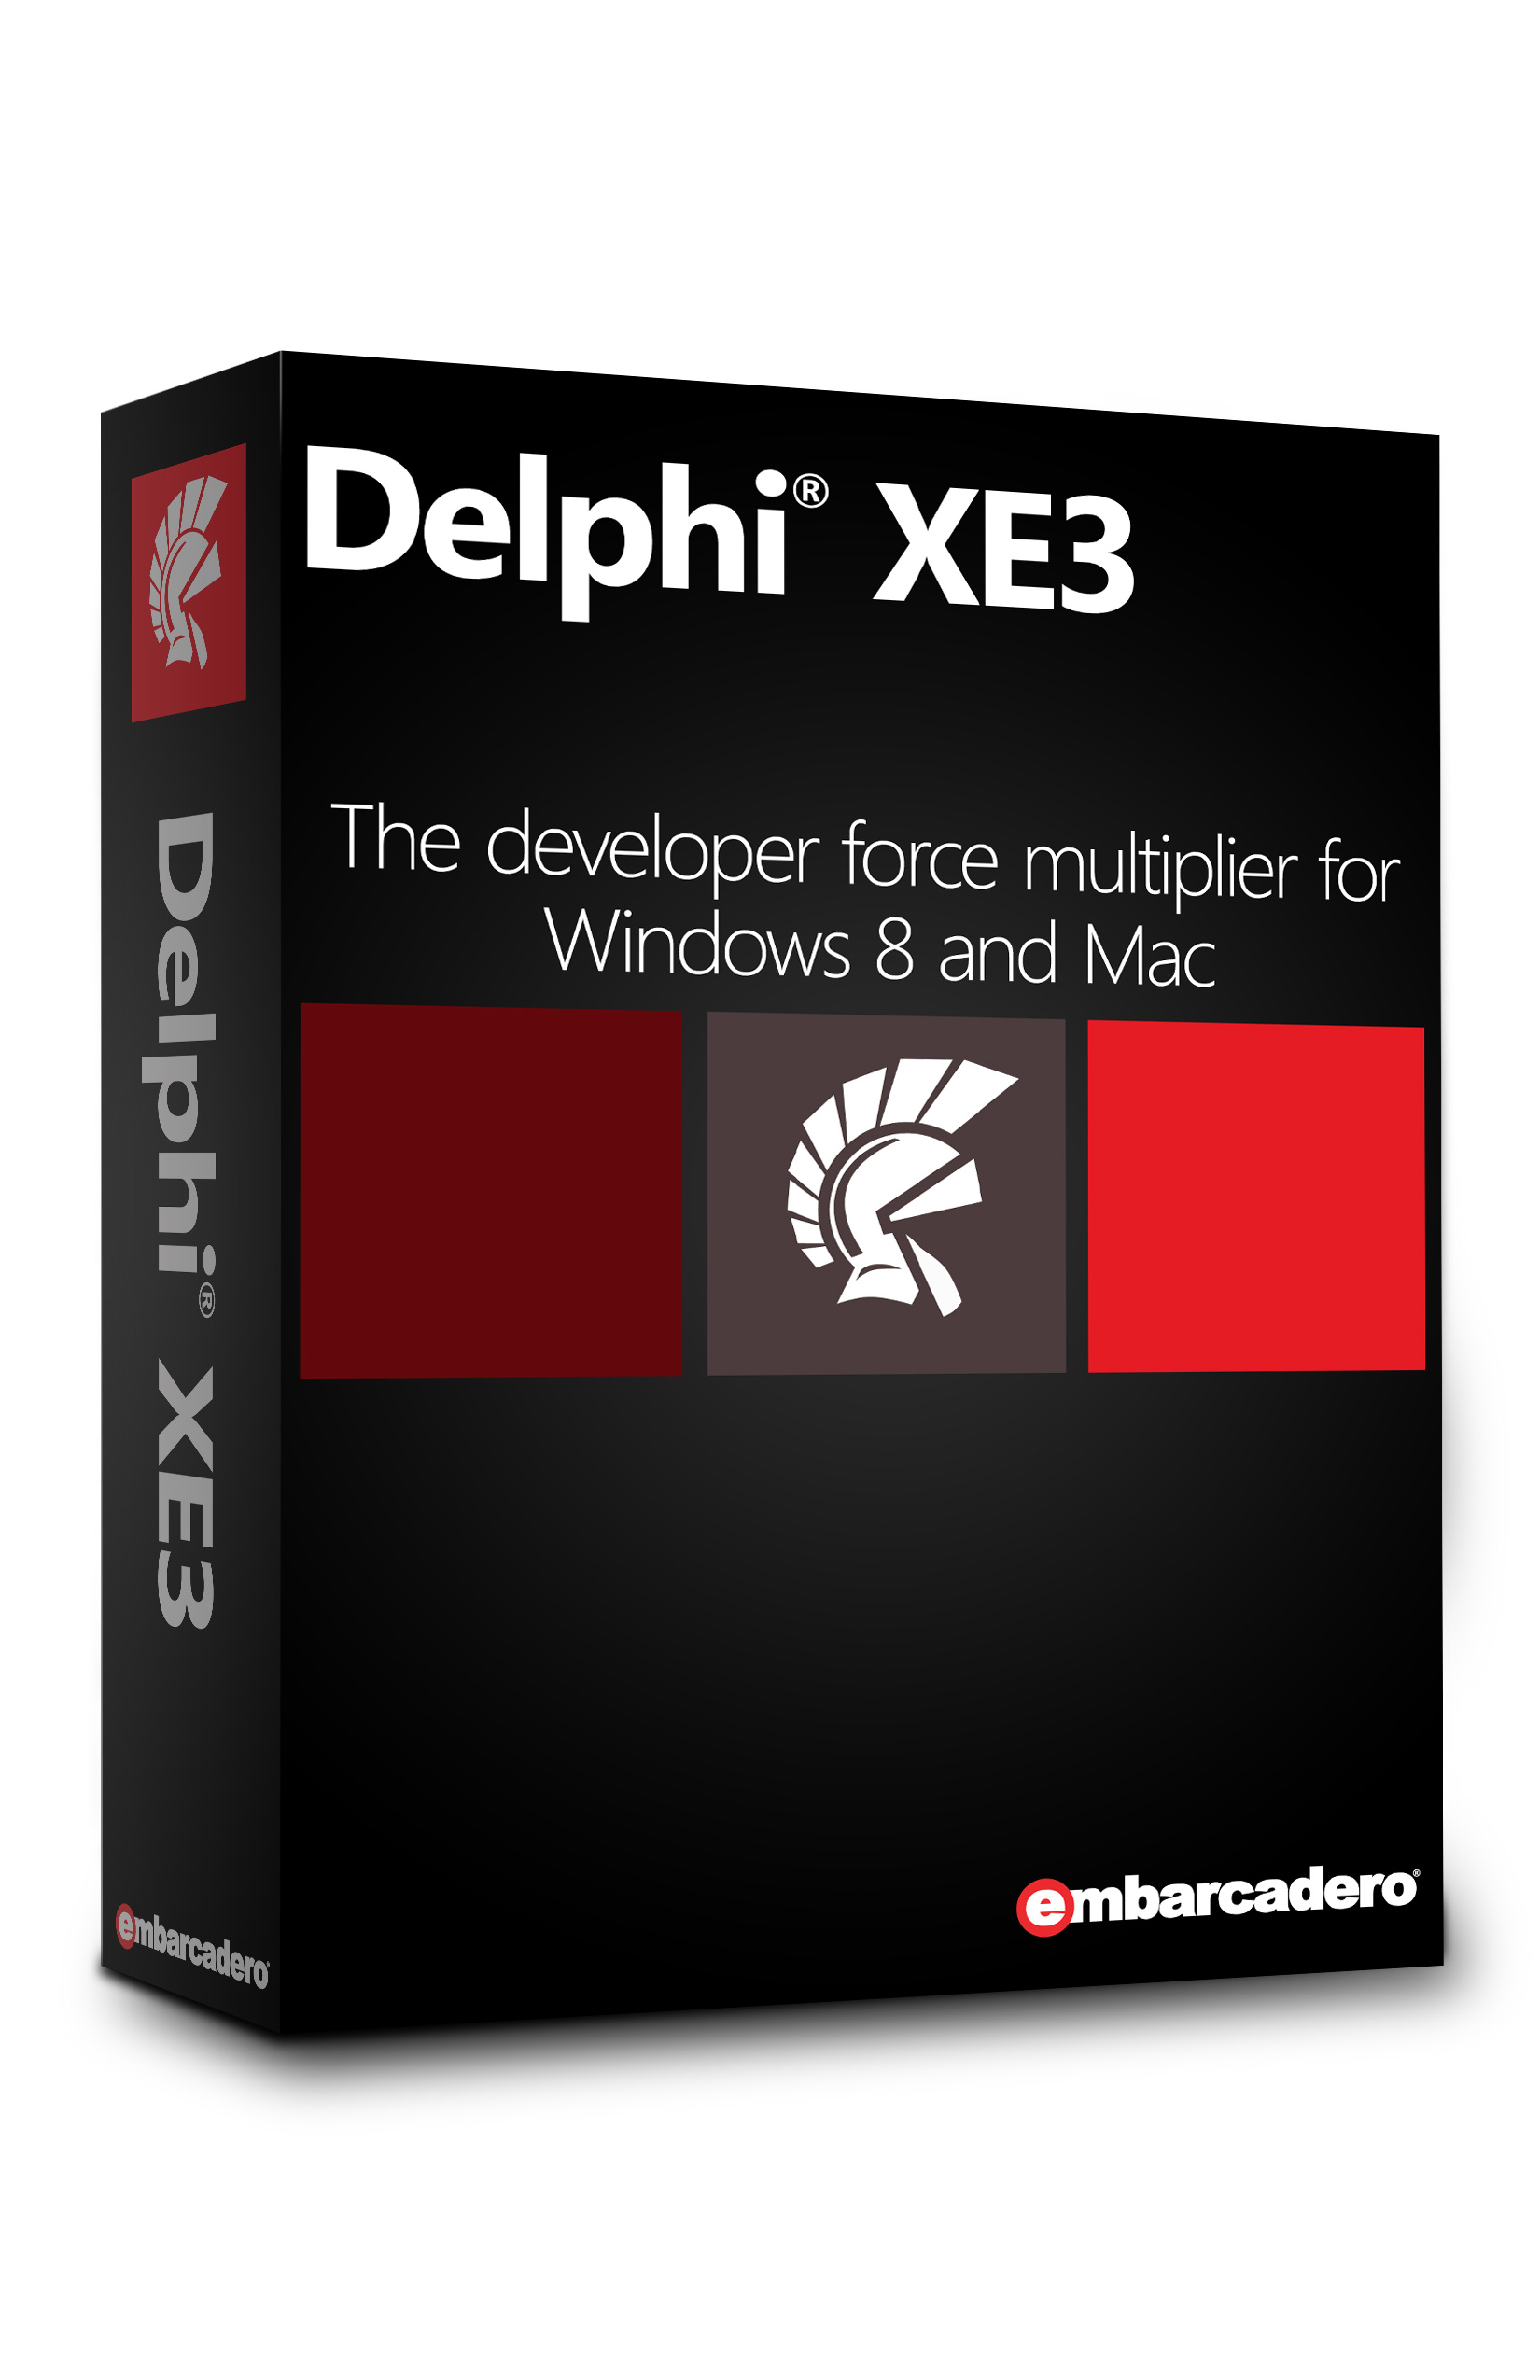 DelphiXE3